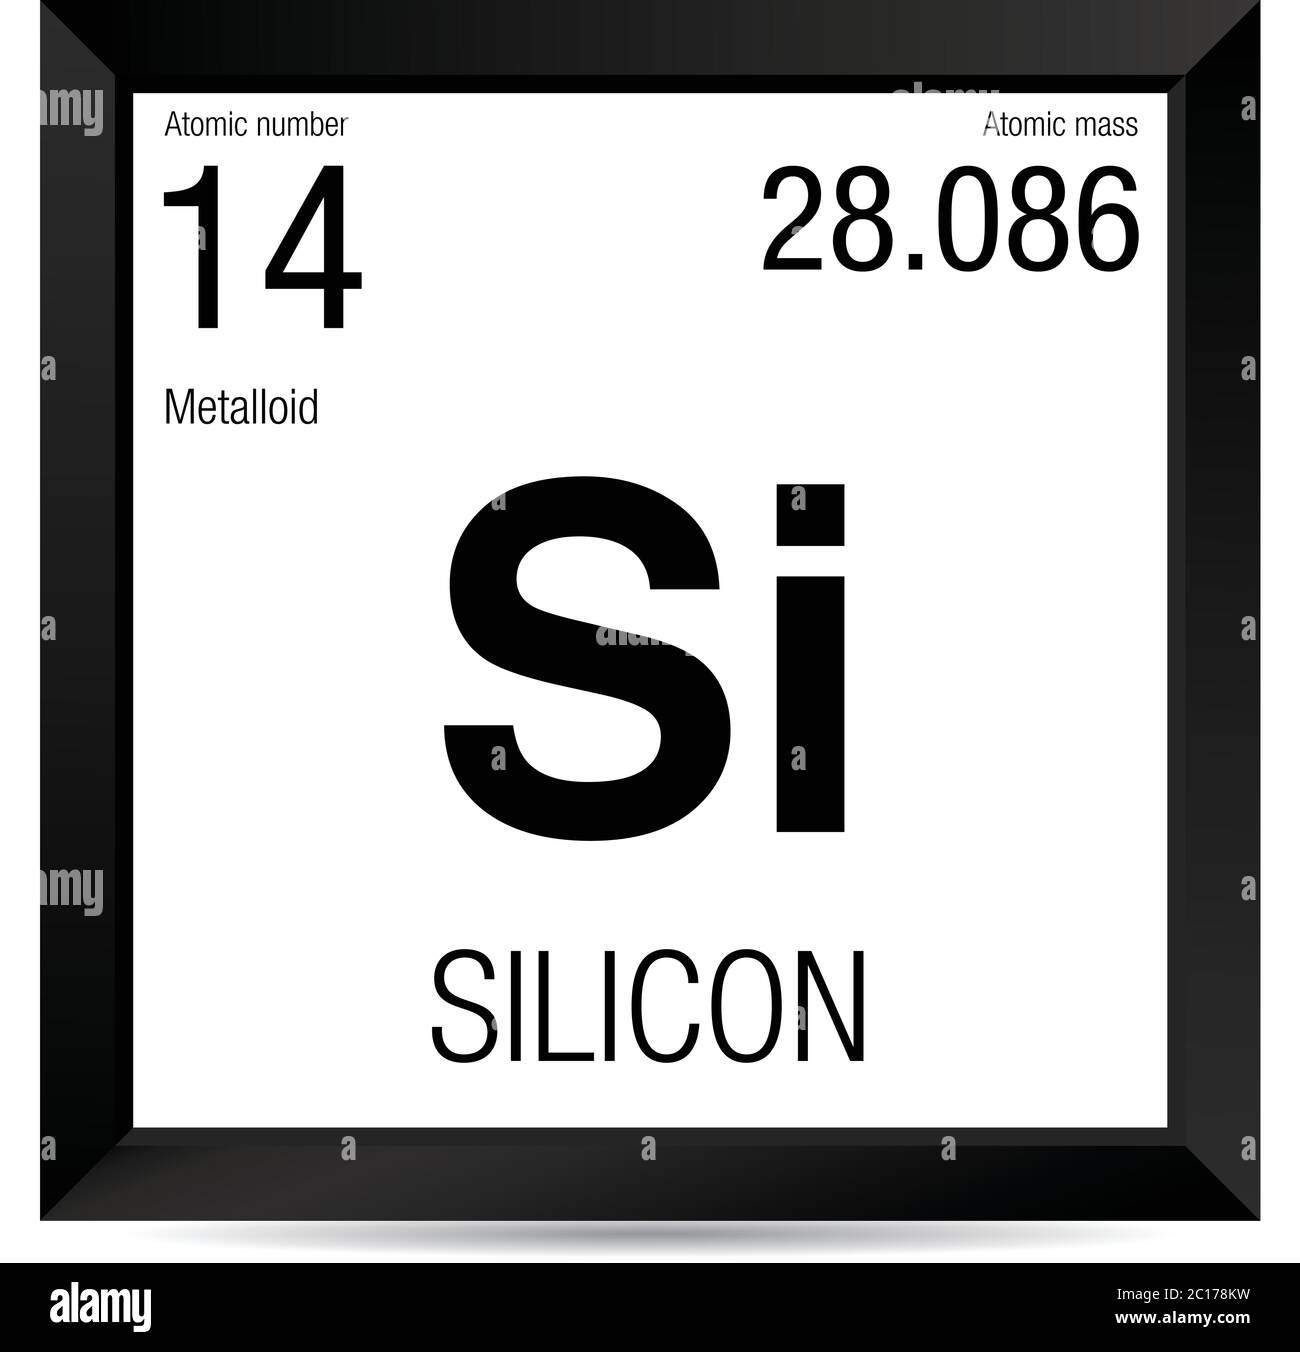 Symbole silicone. Élément numéro 14 du tableau périodique des éléments - Chimie - cadre carré noir avec fond blanc Illustration de Vecteur